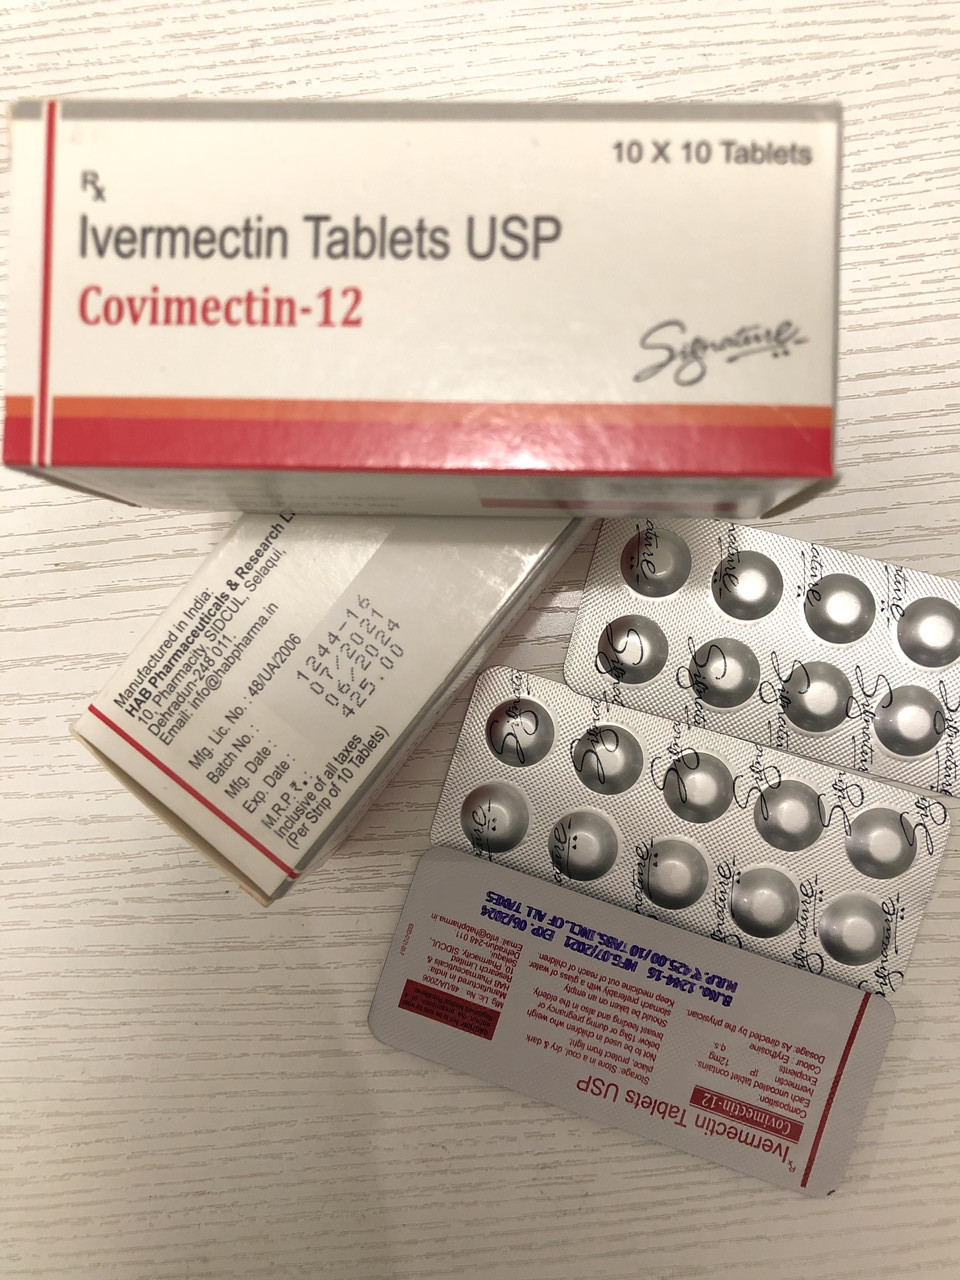 Івермектин 12 оригінальний антипаразитарні препарат для людей, Індія.